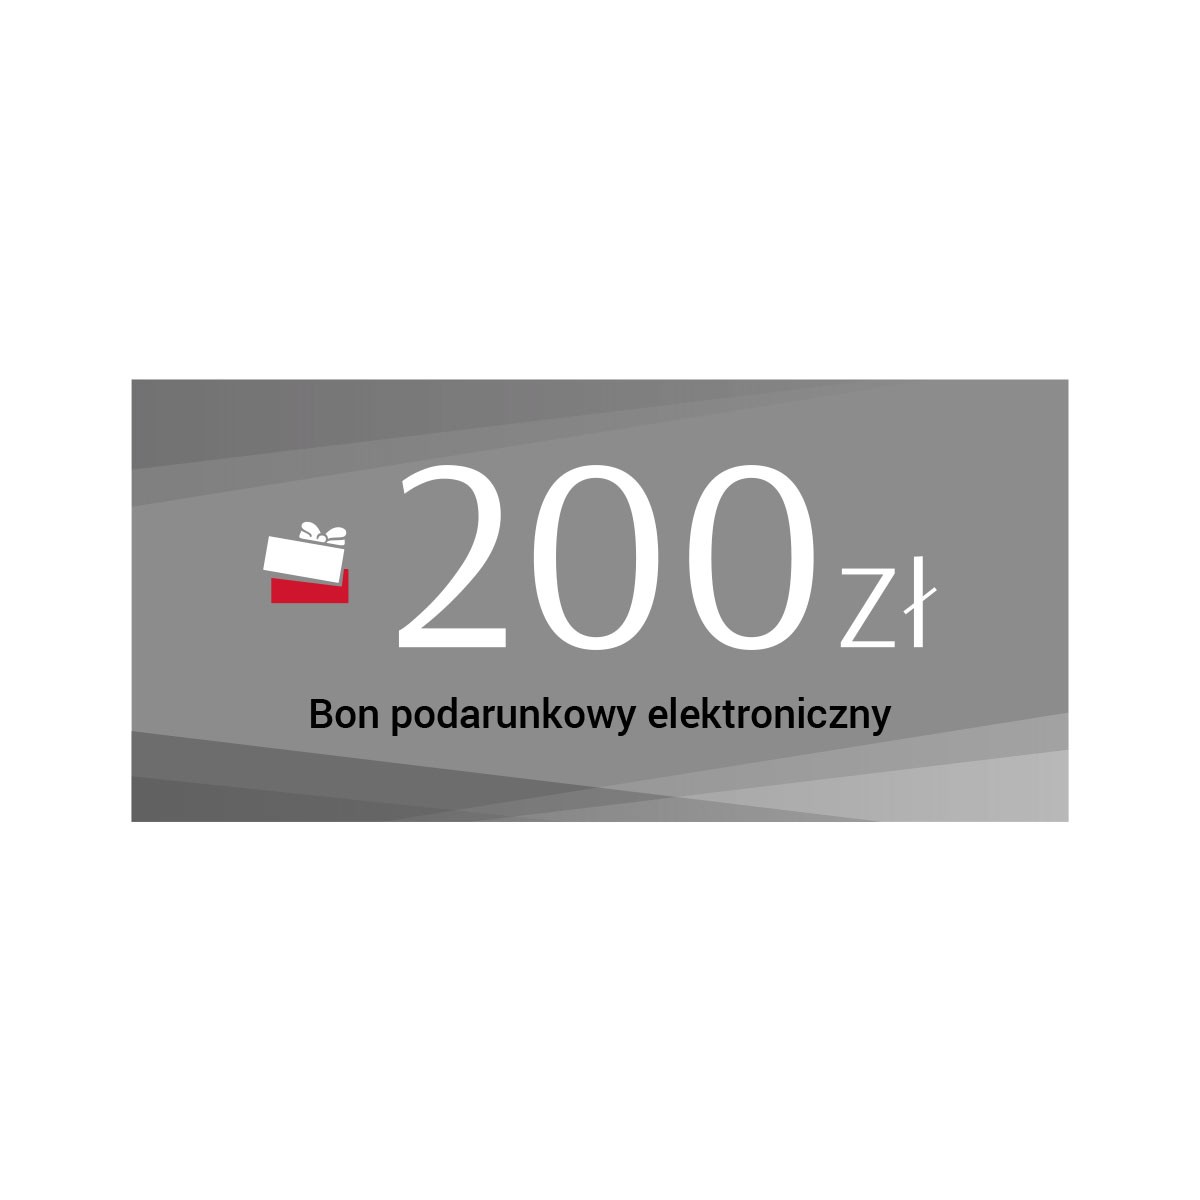 Elektroniczny bon podarunkowy - 200 zł